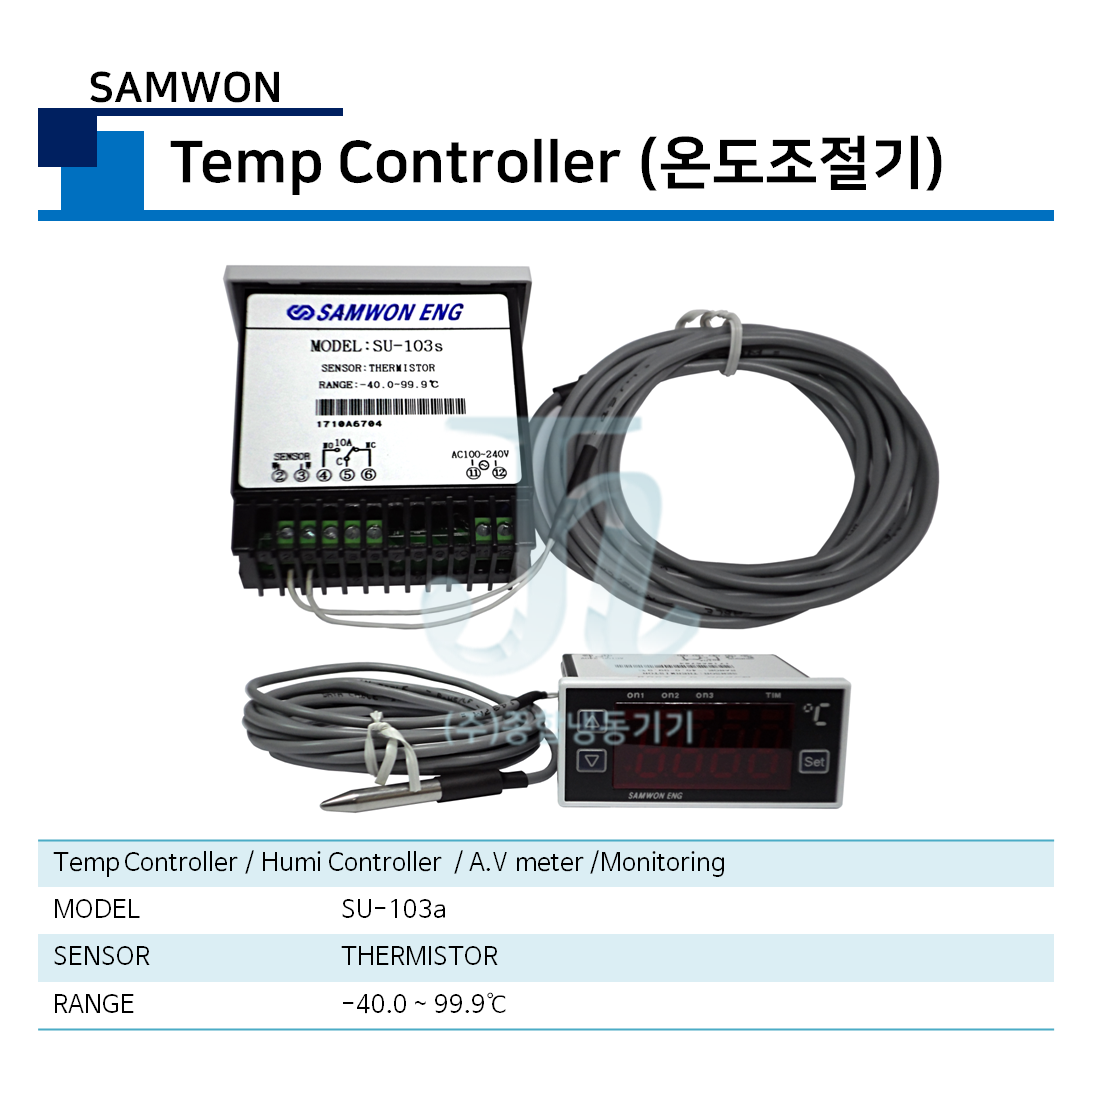 삼원 - 온도조절기 (SAMWON - Temp Controller)